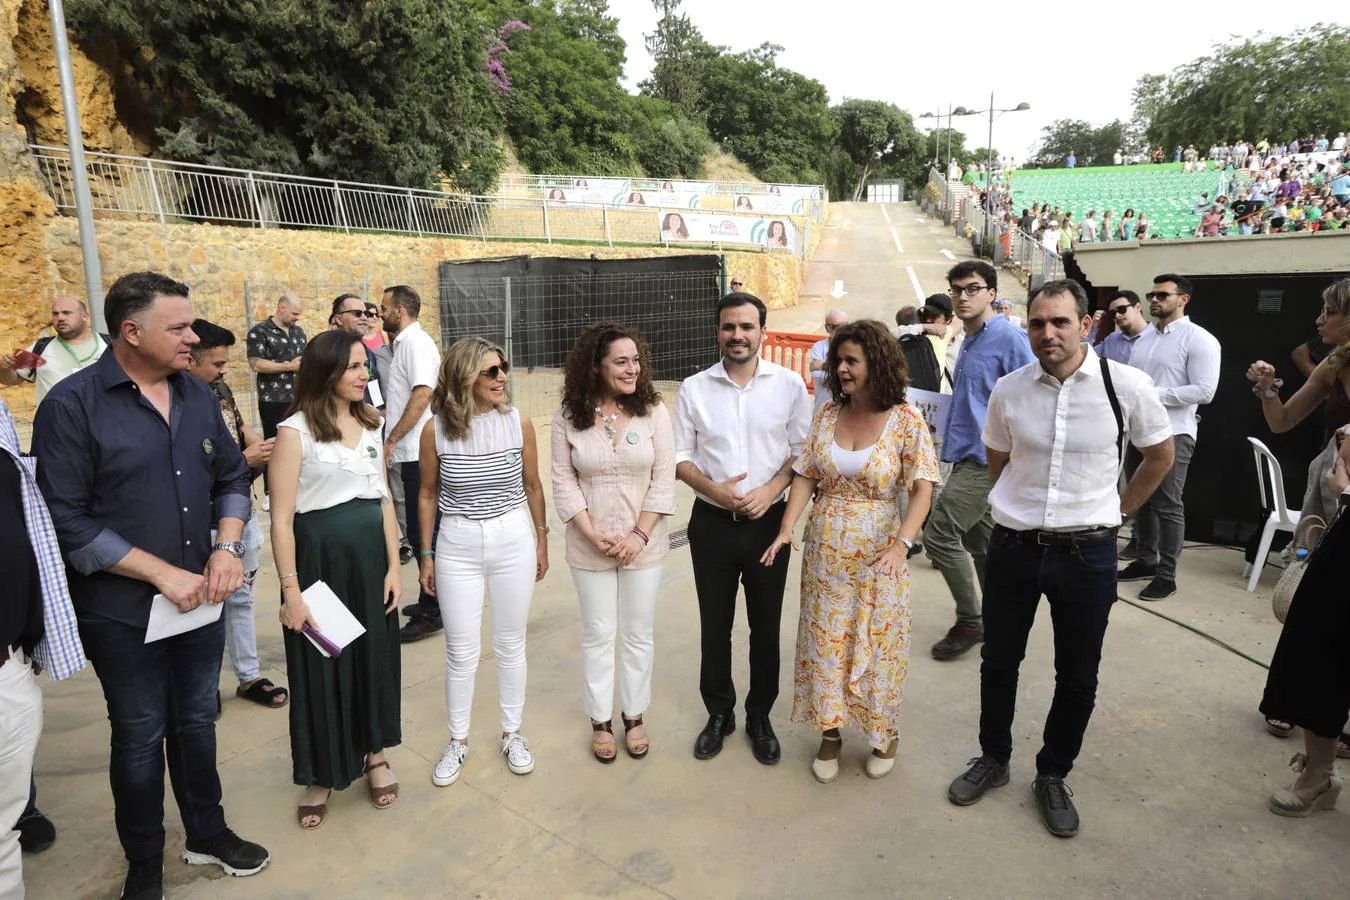 Desembarco de ministros para apoyar a la candidata de Por Andalucía, en imágenes